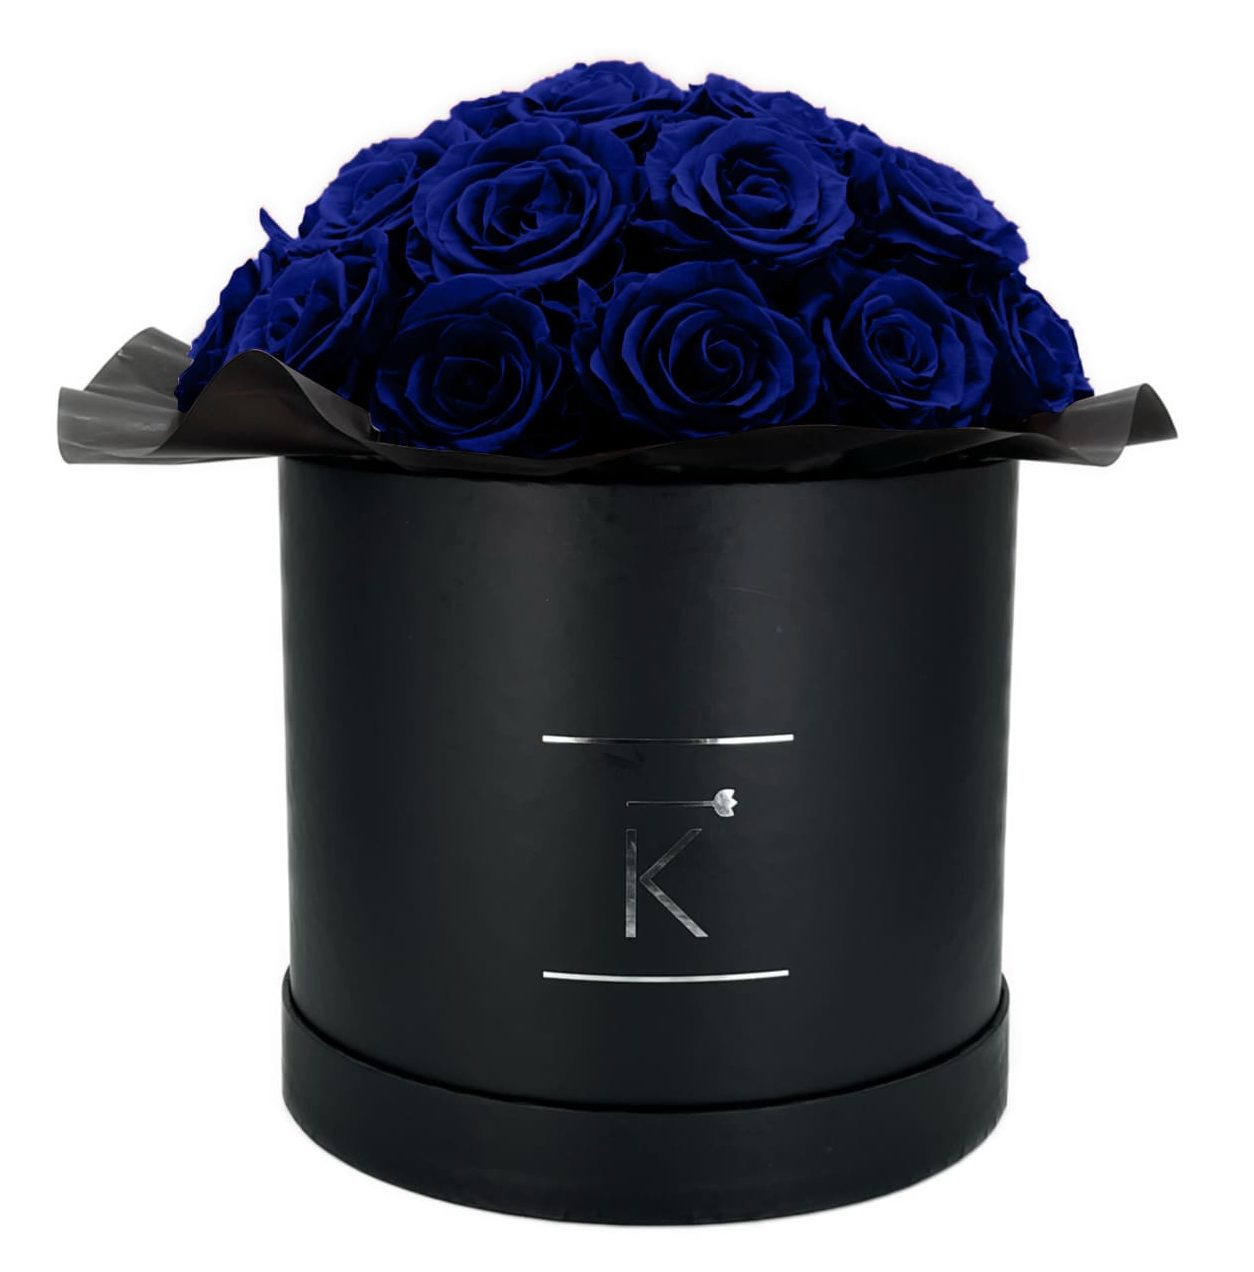 Gorgeous Rosenbox schwarz, blaue Rosen, Ansicht von vorne